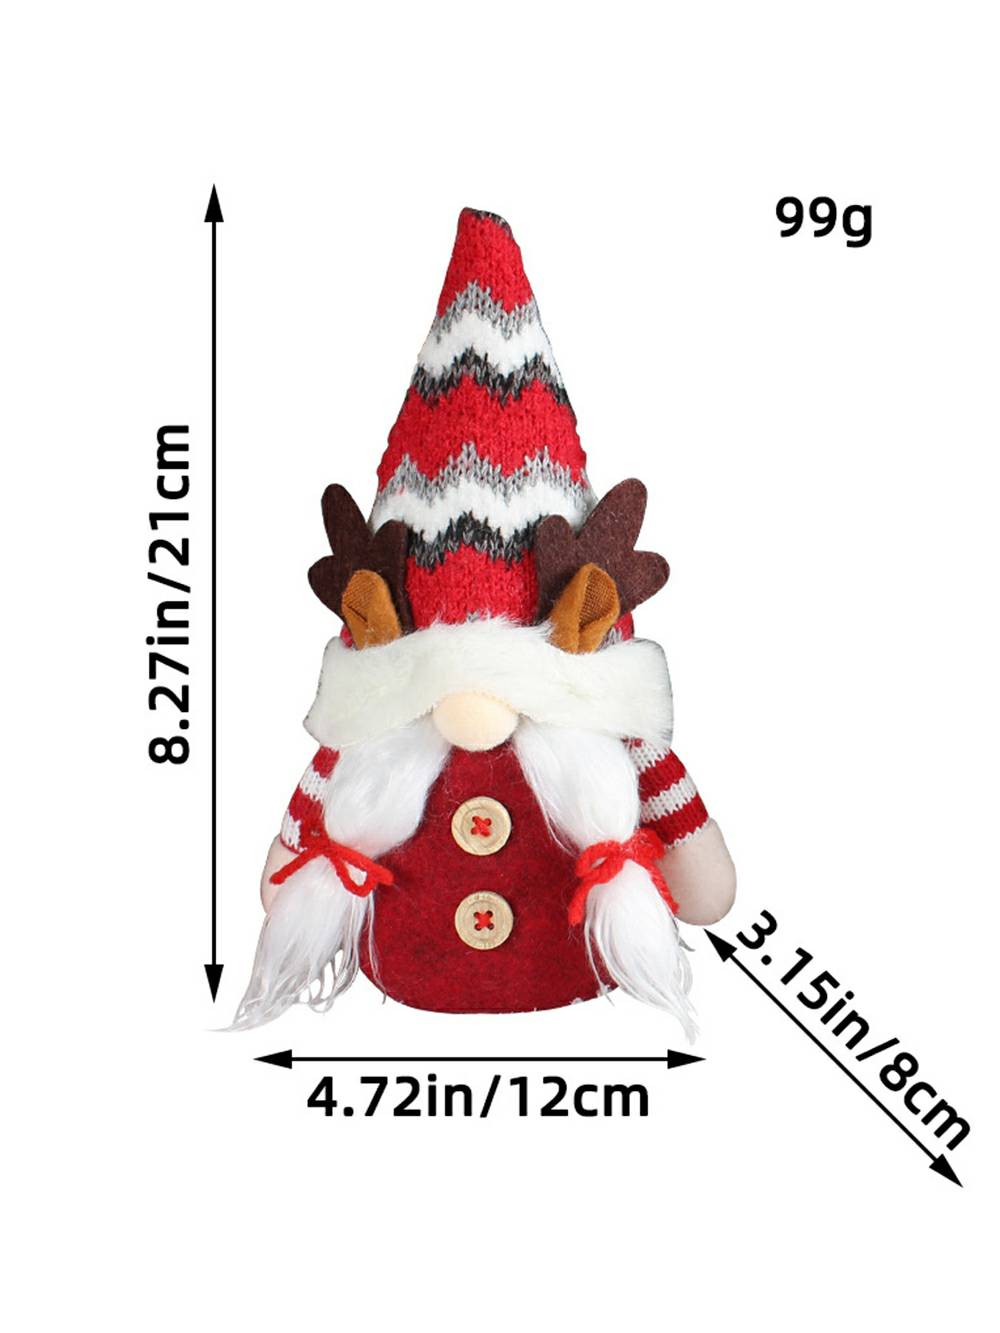 Muñeco Rudolph de reno del bosque de peluche navideño